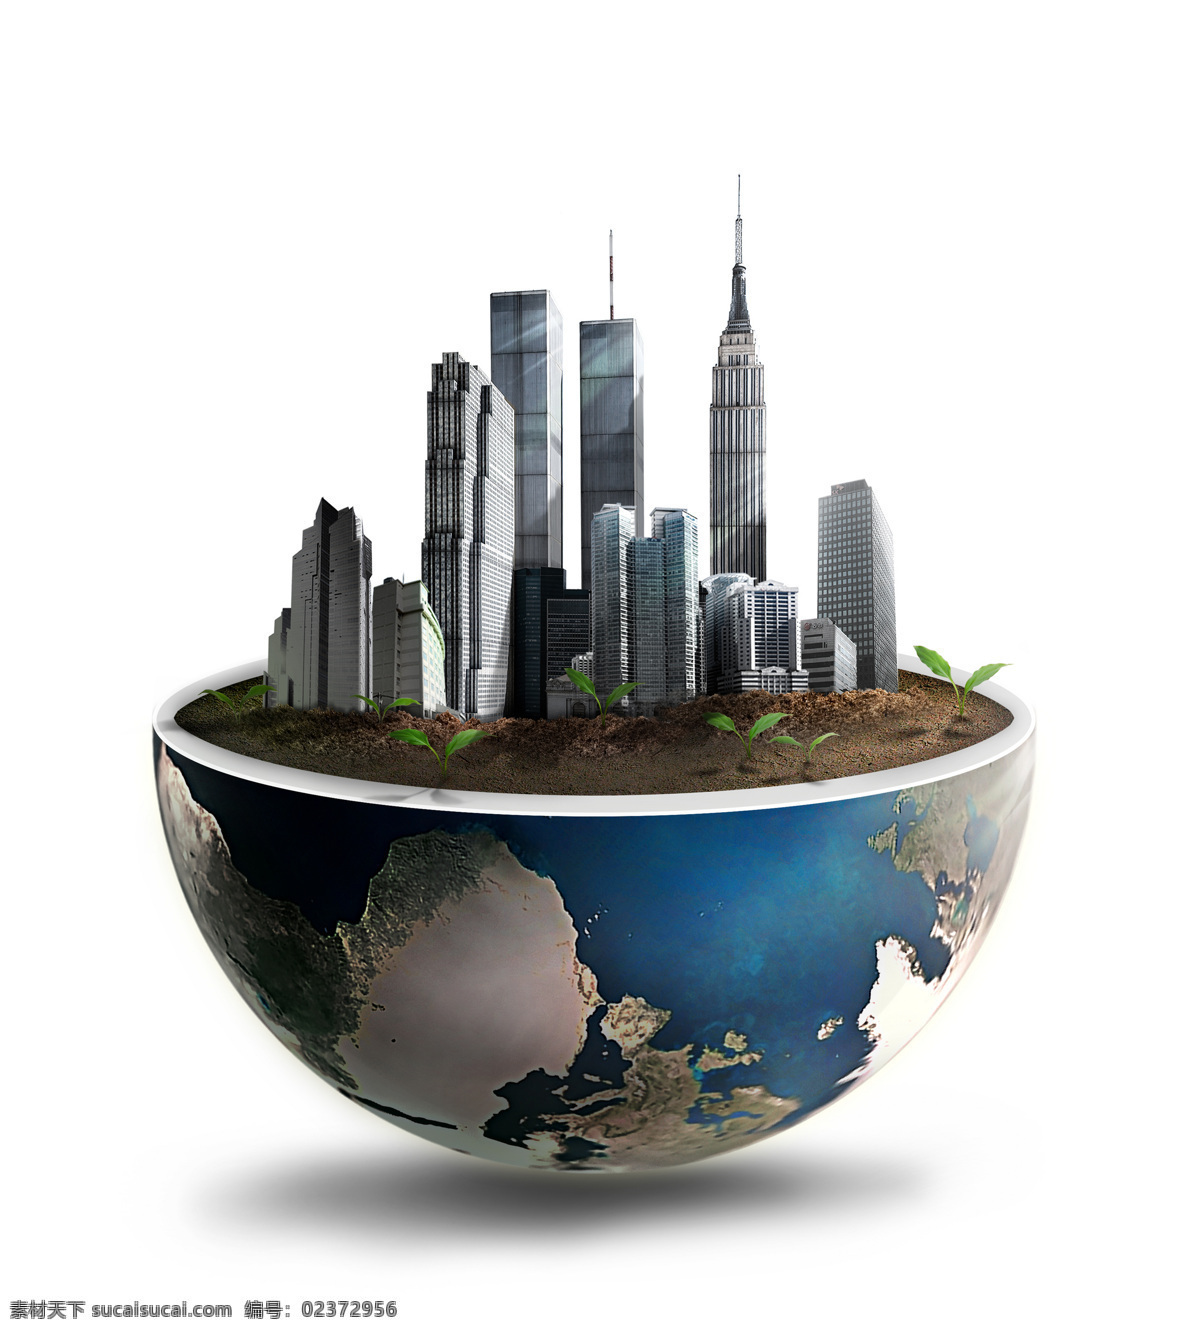 梦幻城市 城市设计 城市 土壤 摩天大楼 创意设计 3d地球 立体地球 小草 绿芽 环保 高楼 楼房